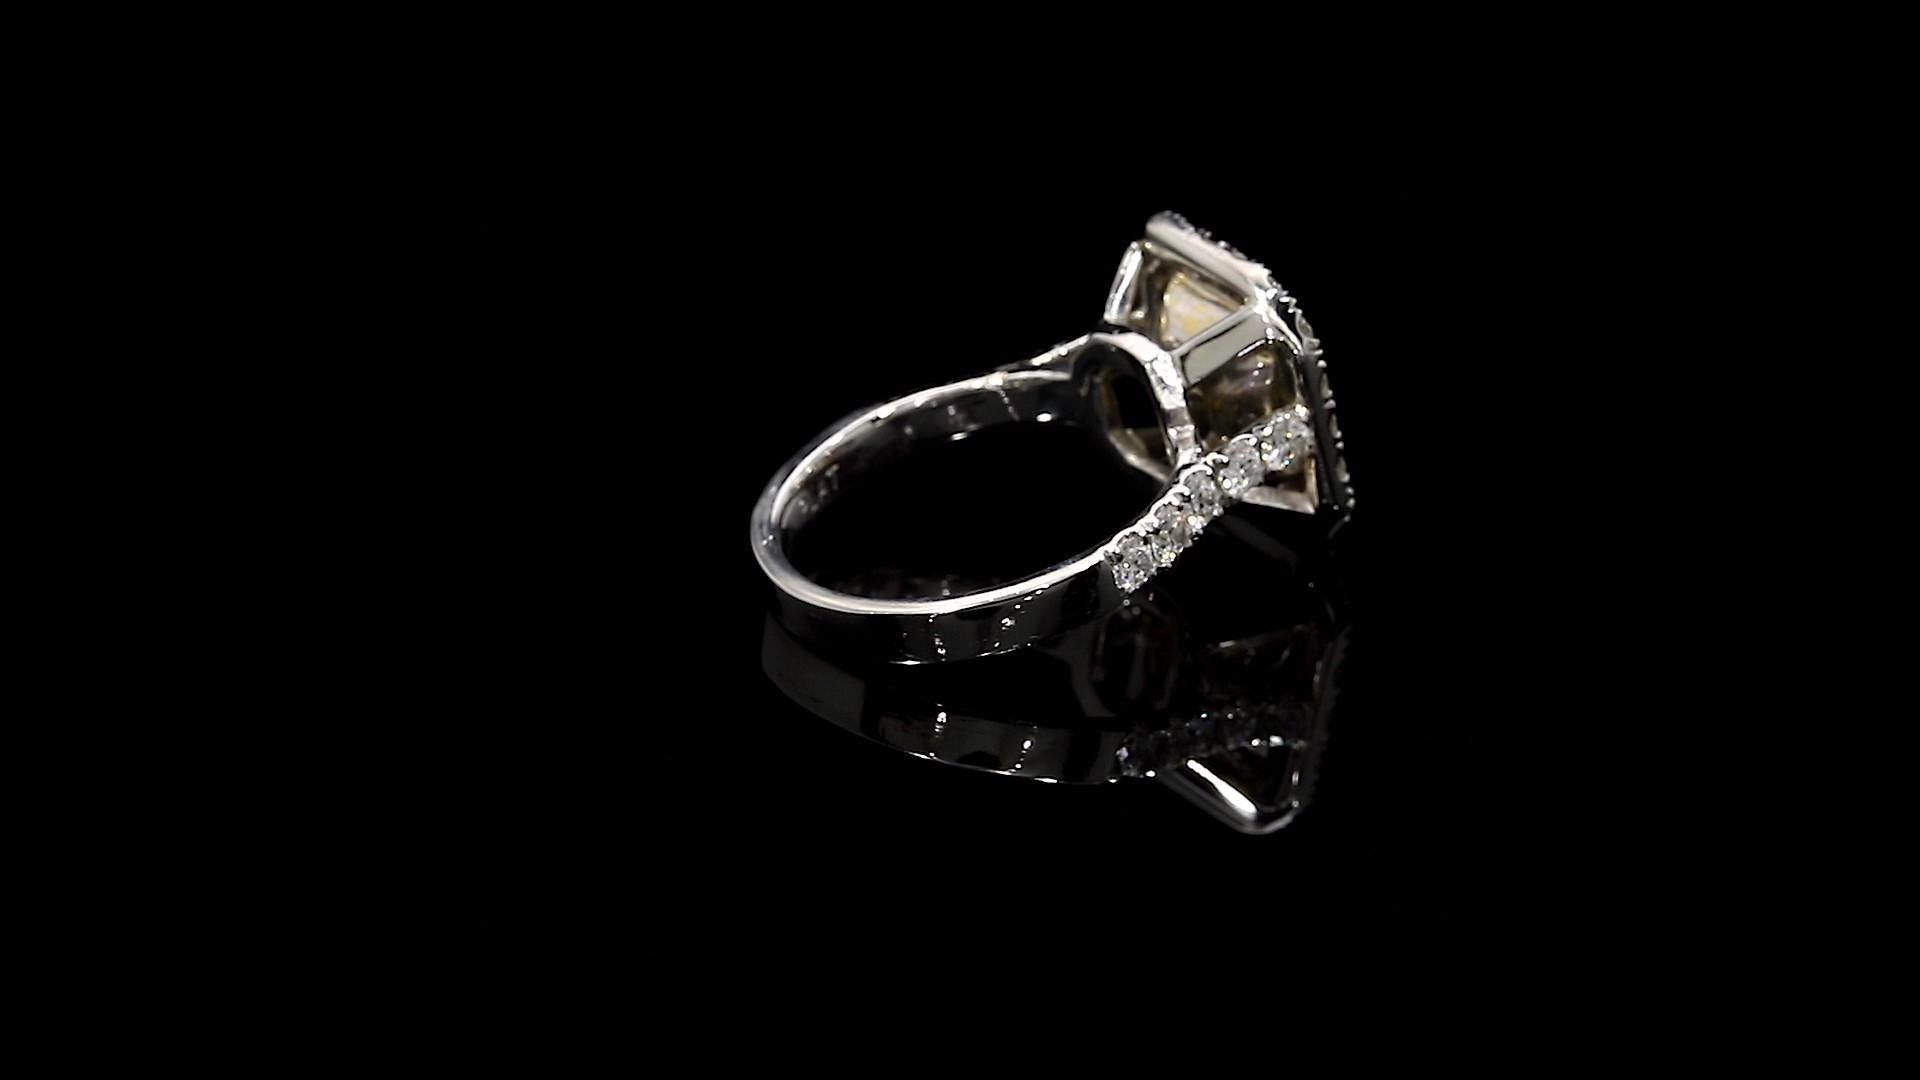 Radiant Cut Fancy Yellow Radiant Diamond Ring 3.63 Carat Platinum/18 Karat YG GIA Certified